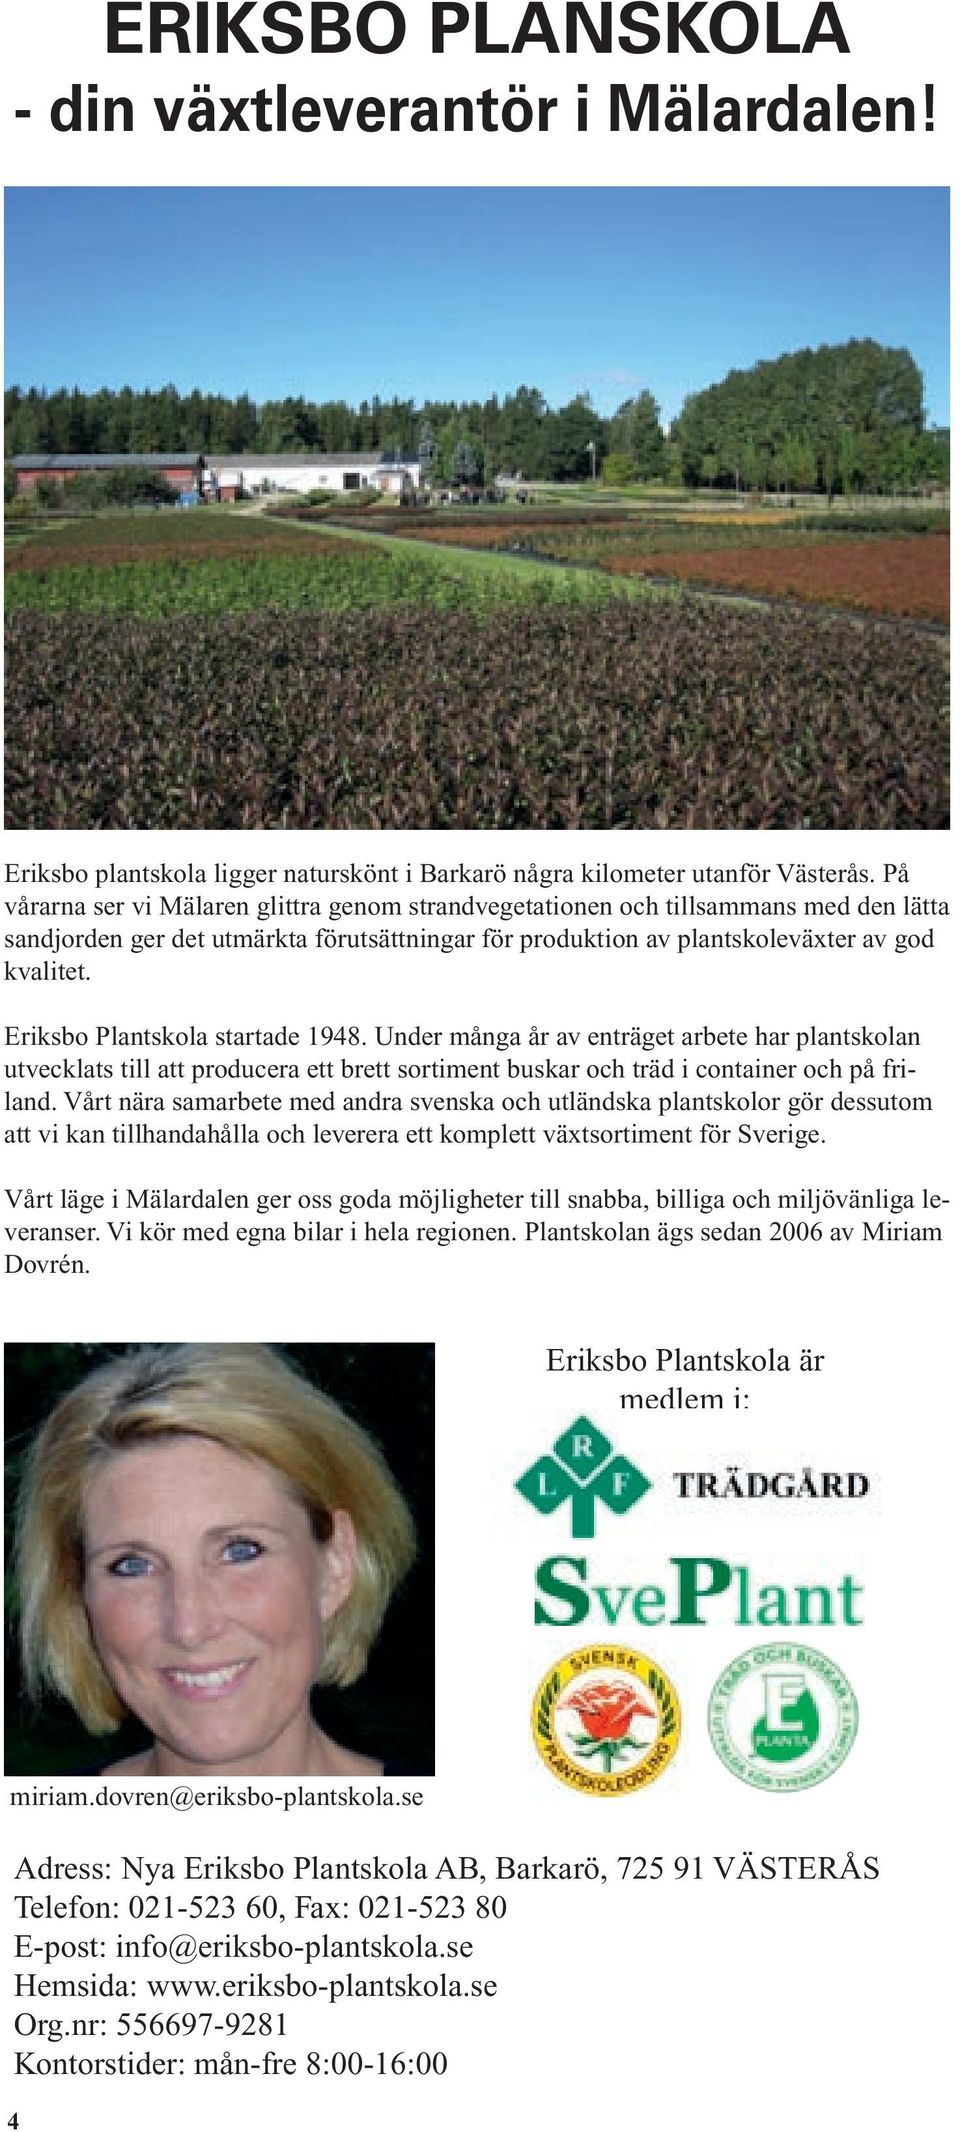 Eriksbo Plantskola startade 1948. Under många år av enträget arbete har plantskolan utvecklats till att producera ett brett sortiment buskar och träd i container och på friland.